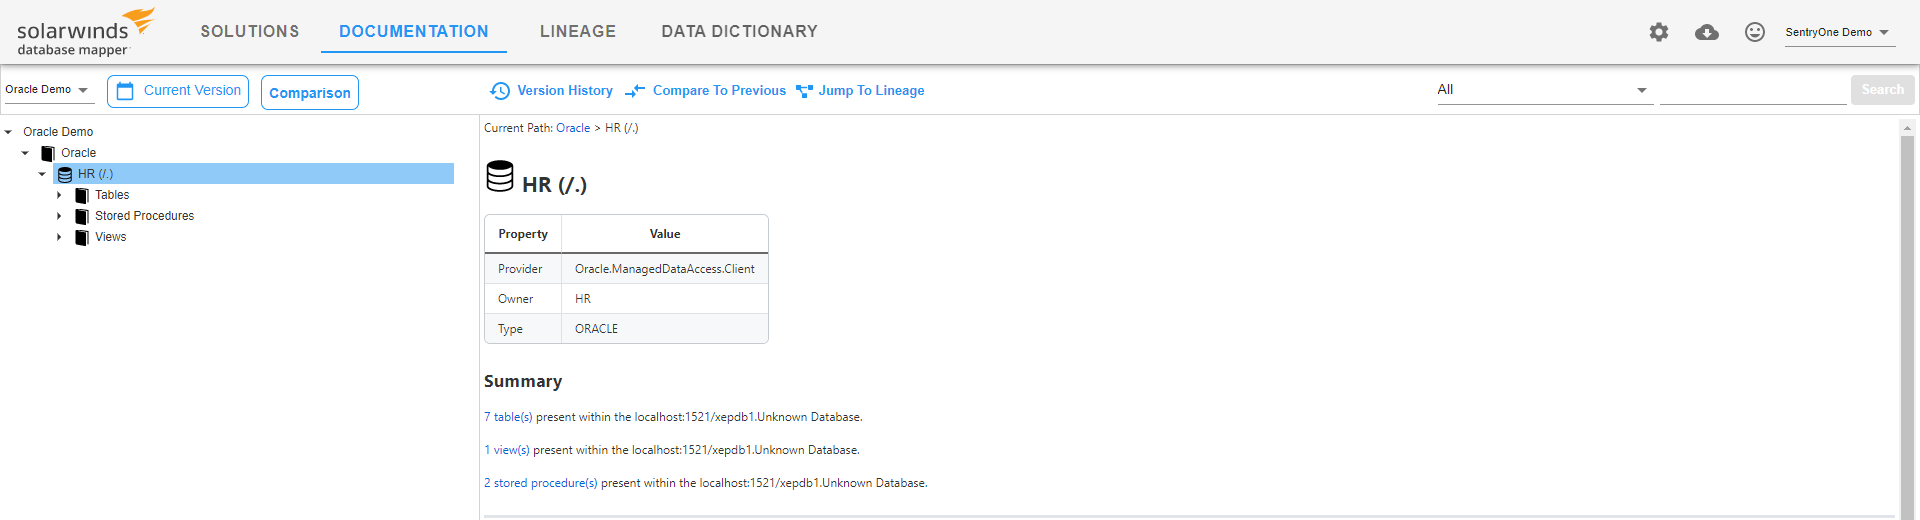 Database Mapper Documentation Oracle database example